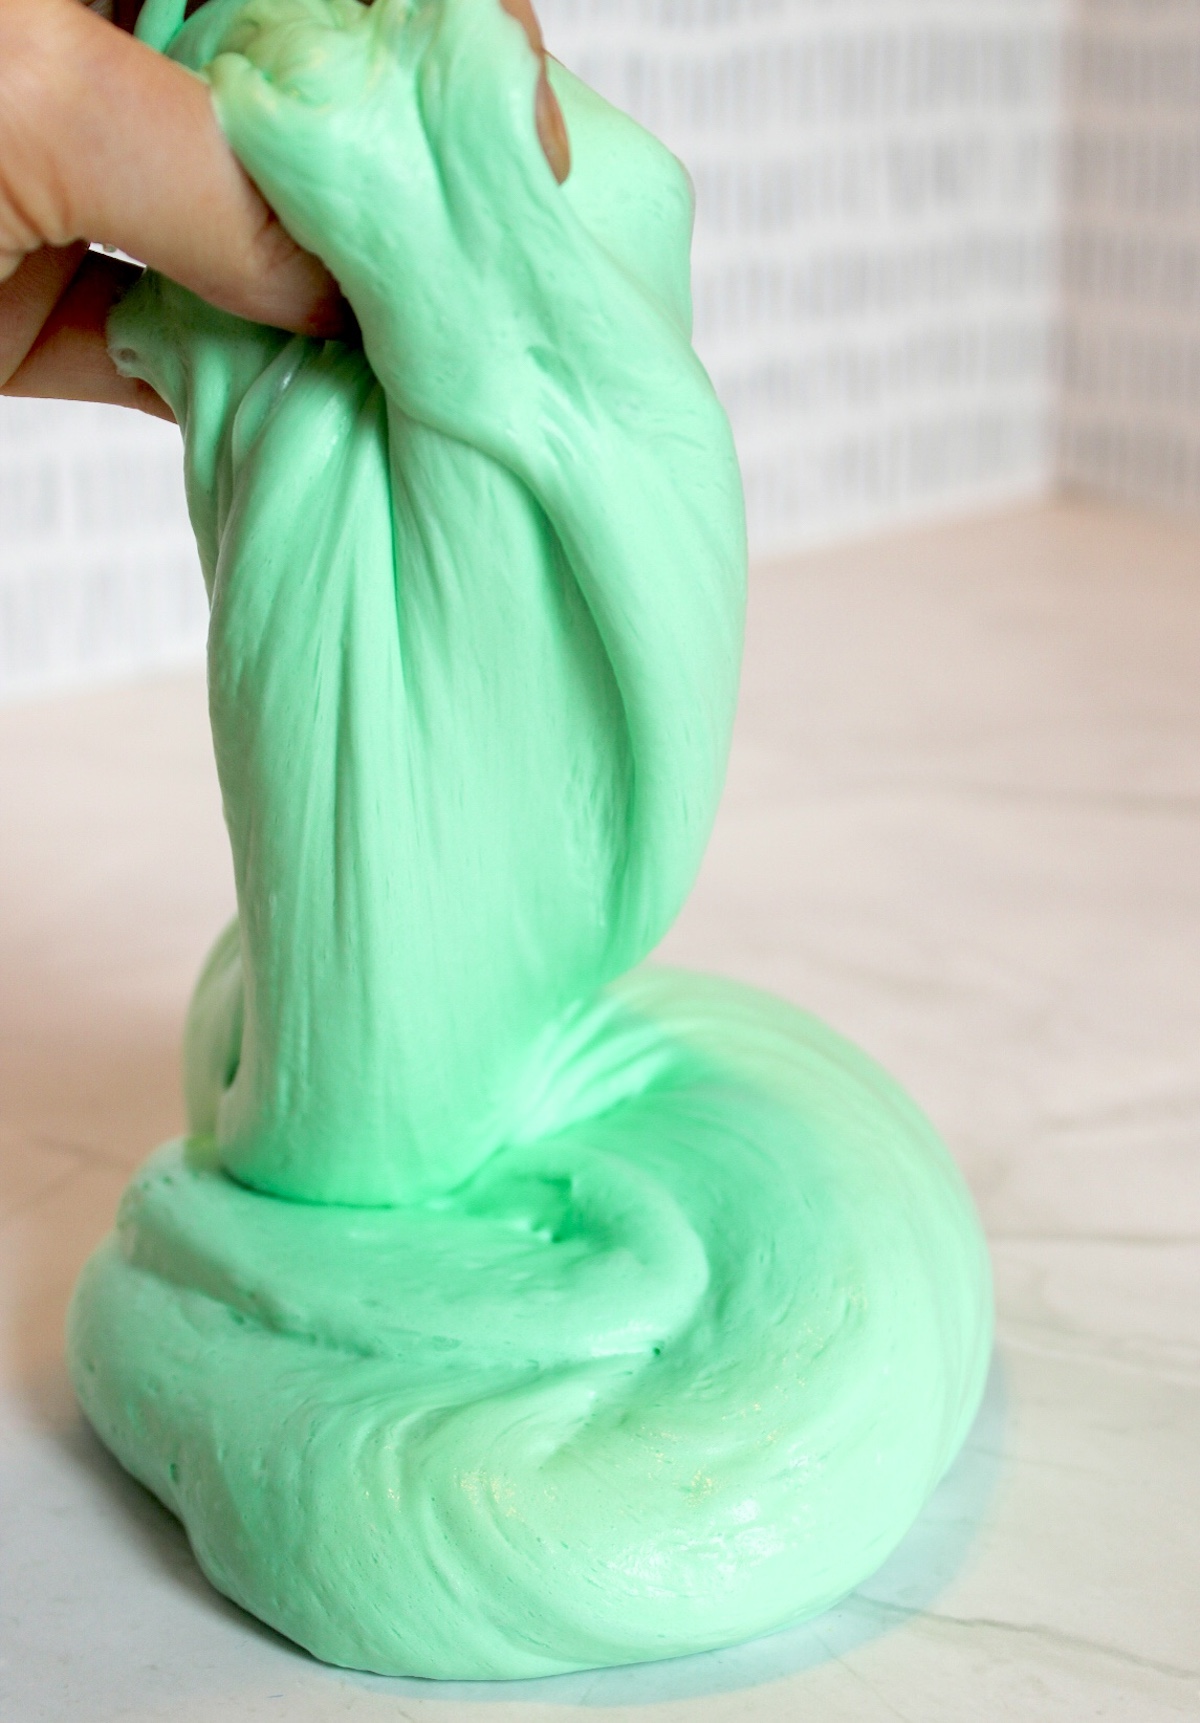 Best Fluffy Slime Recipe for Kids